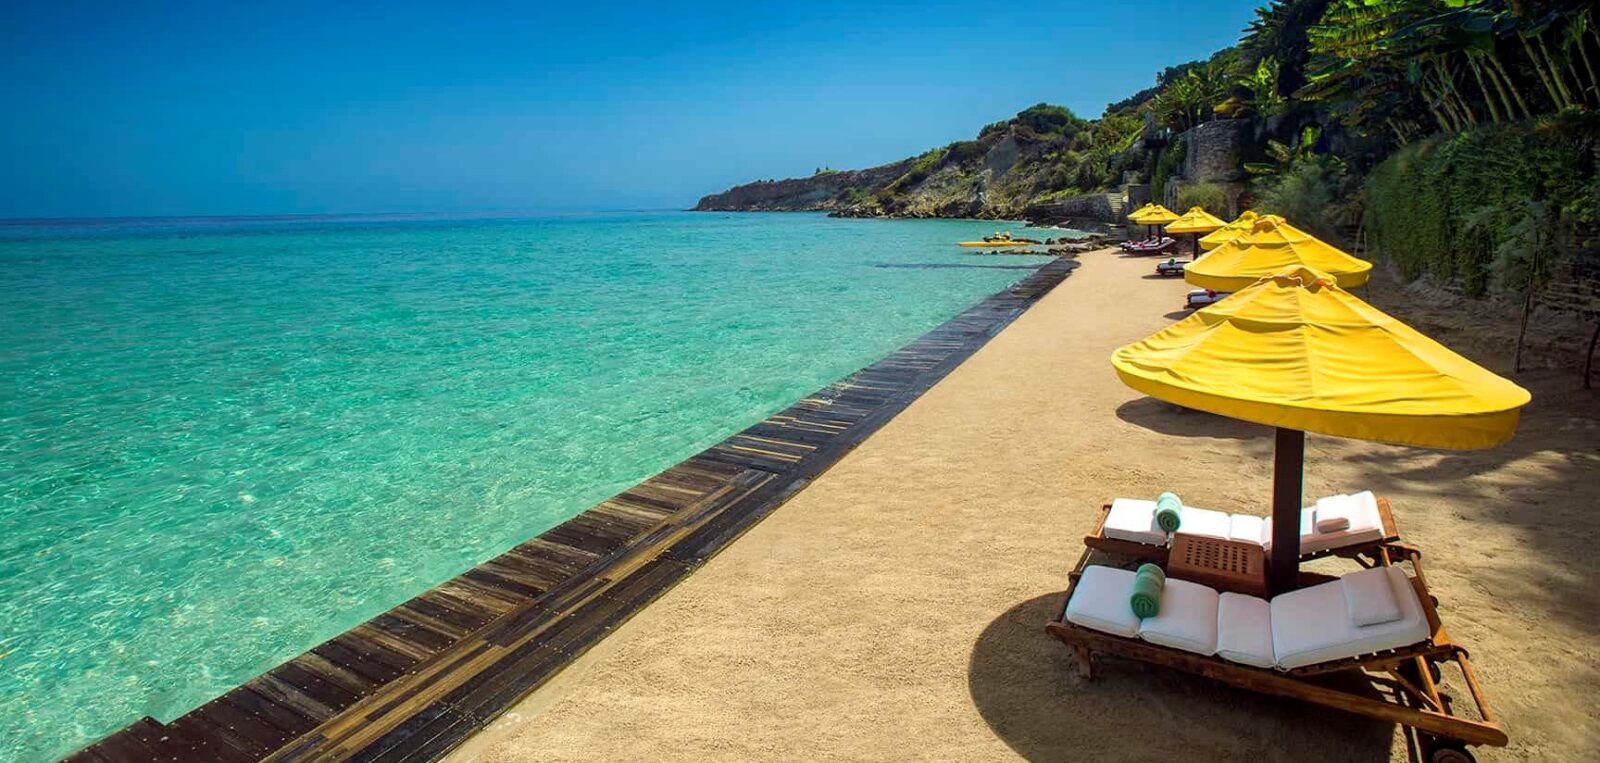 Best-Beach-Zakynthos-Luxury-Hotel-Greece-12-7026-1728pixels-OCT2015